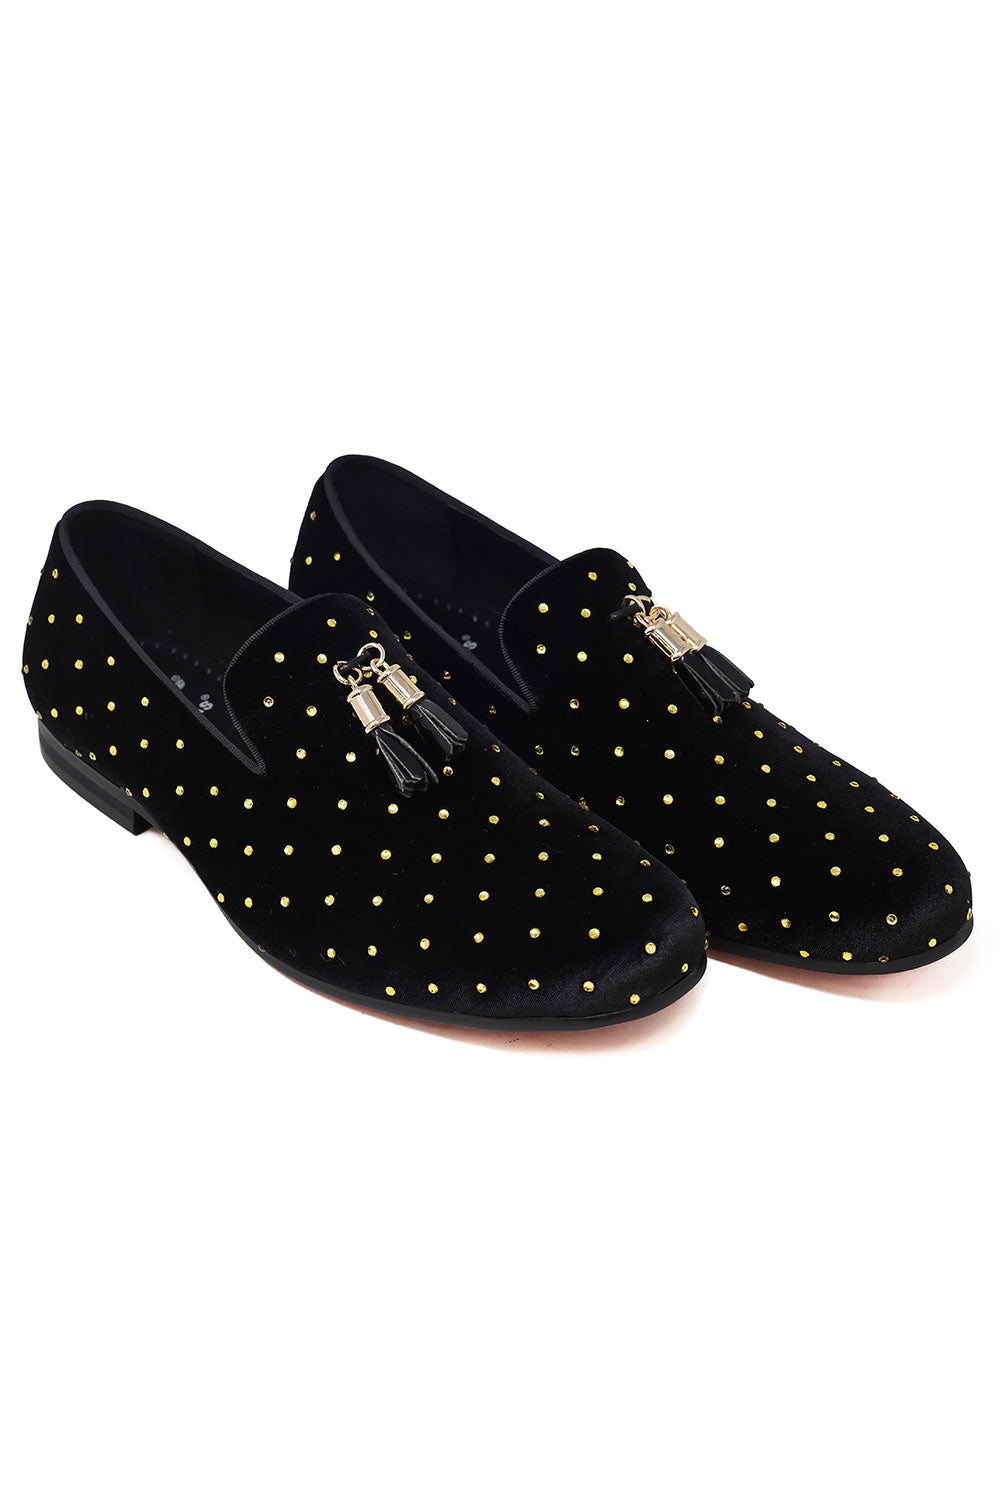 Barabas Men's Rhinestone Velvet Tassel Loafer Dress Shoes SH3020 Black Gold